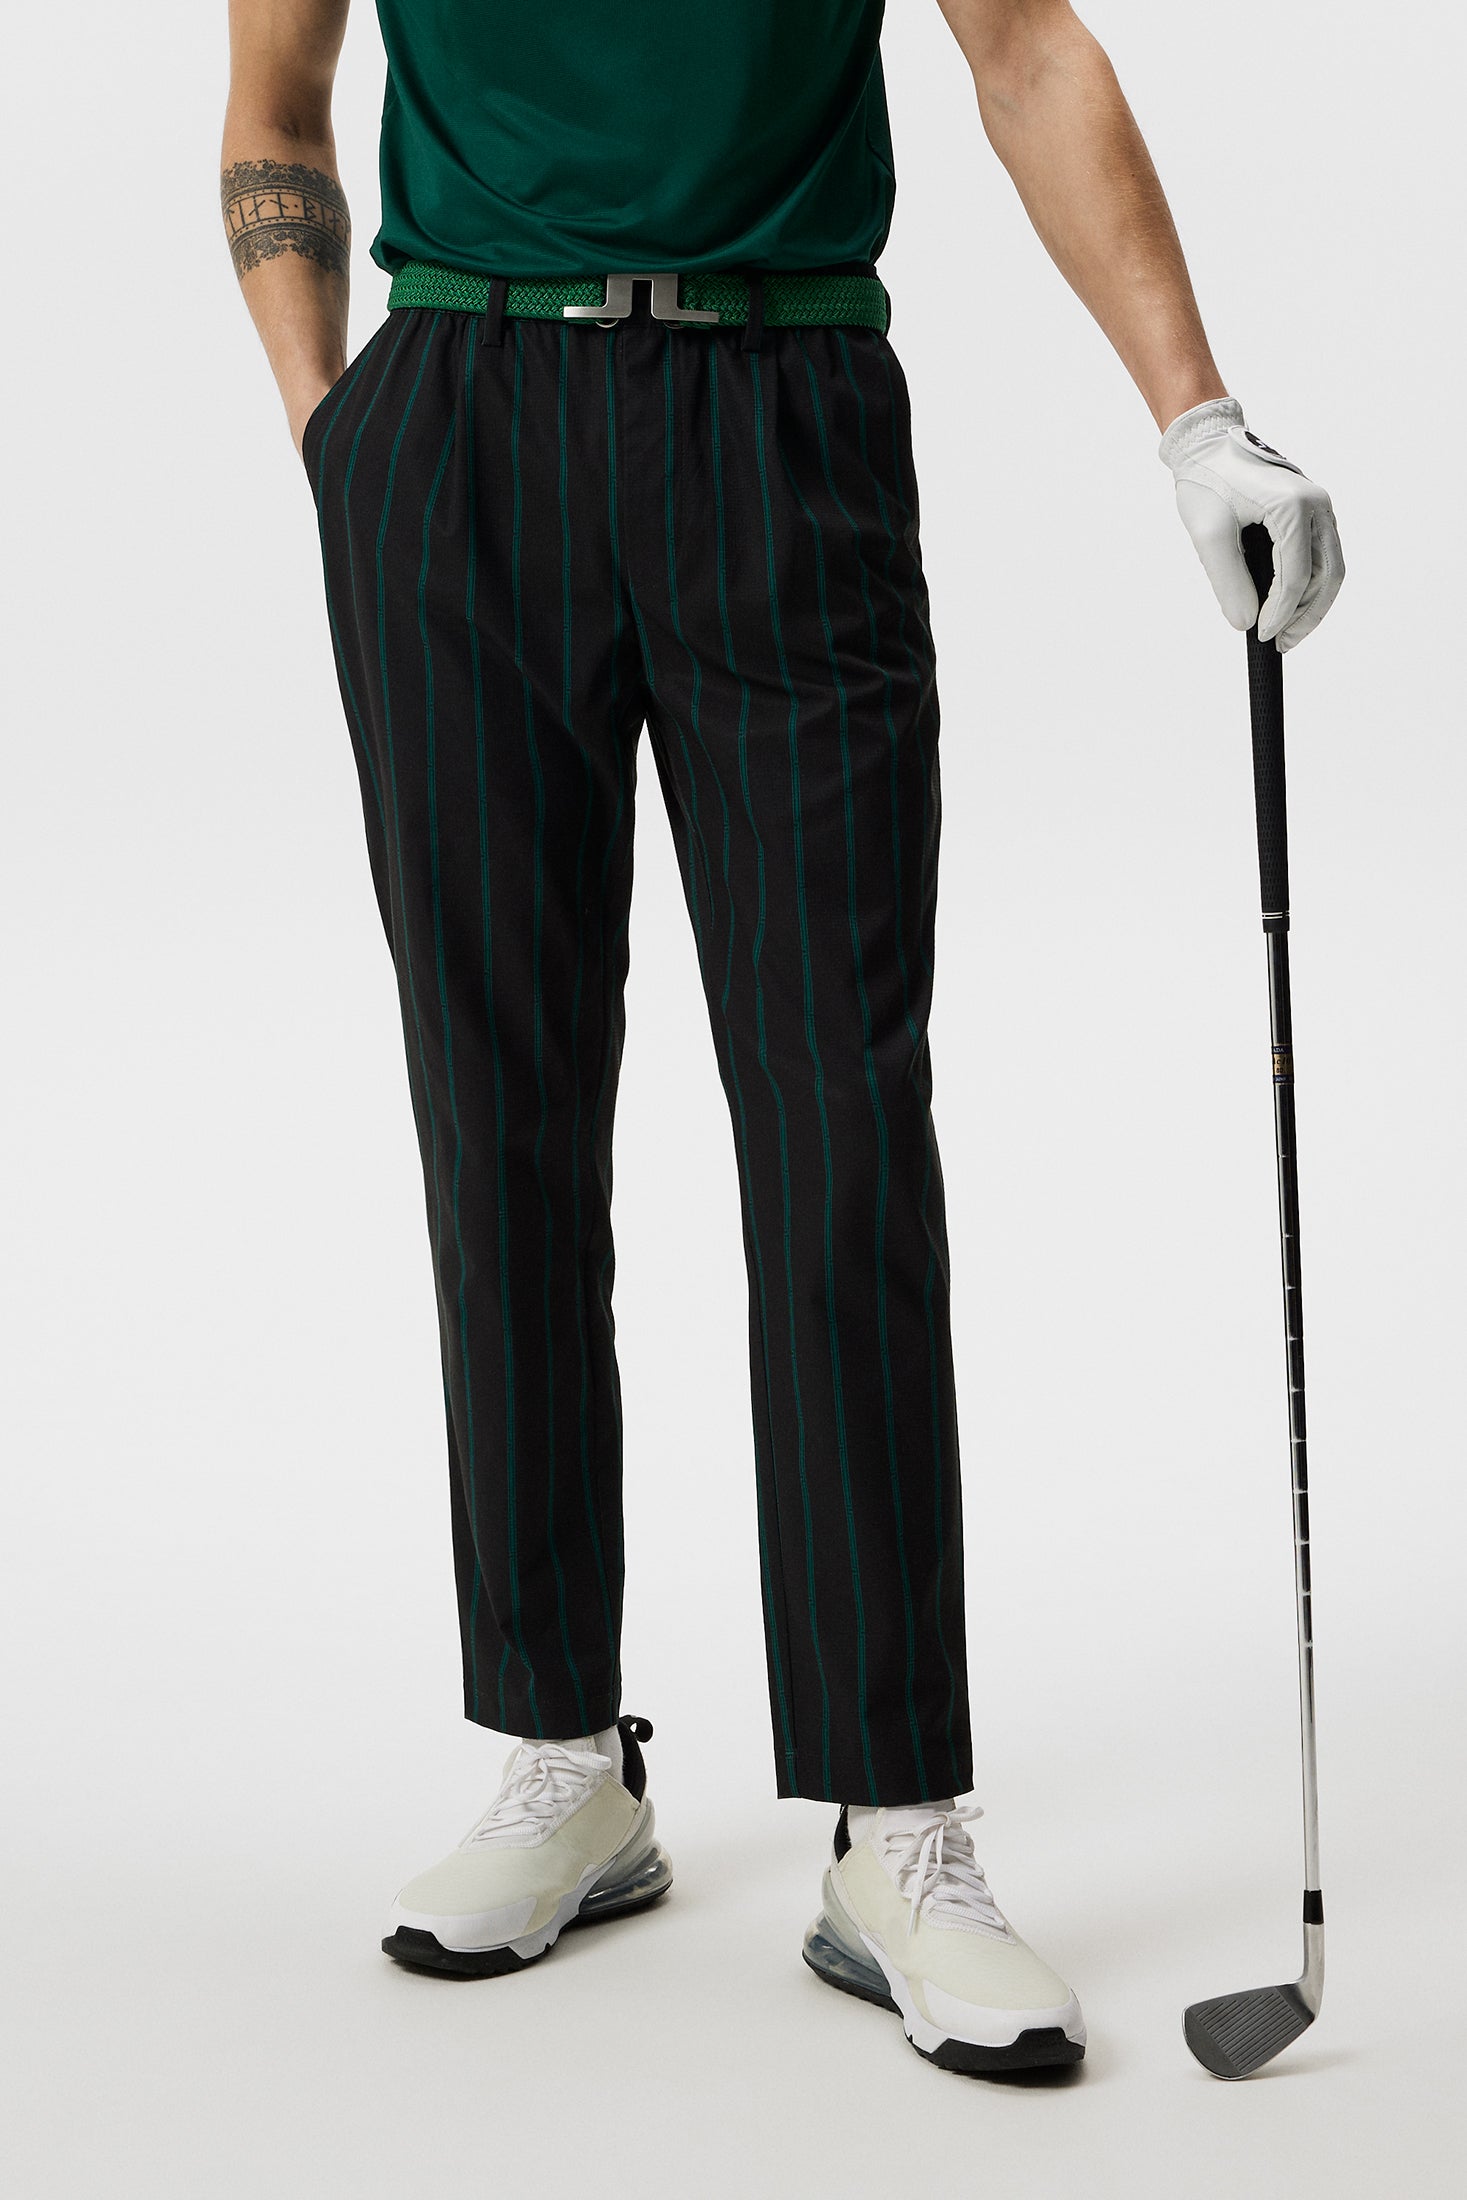 Custom Logo Golf pants Spring Men's Suit Pants Fashion Casual Business Suit  Pants Men's Wedding Party Work Pants Classic Large - AliExpress